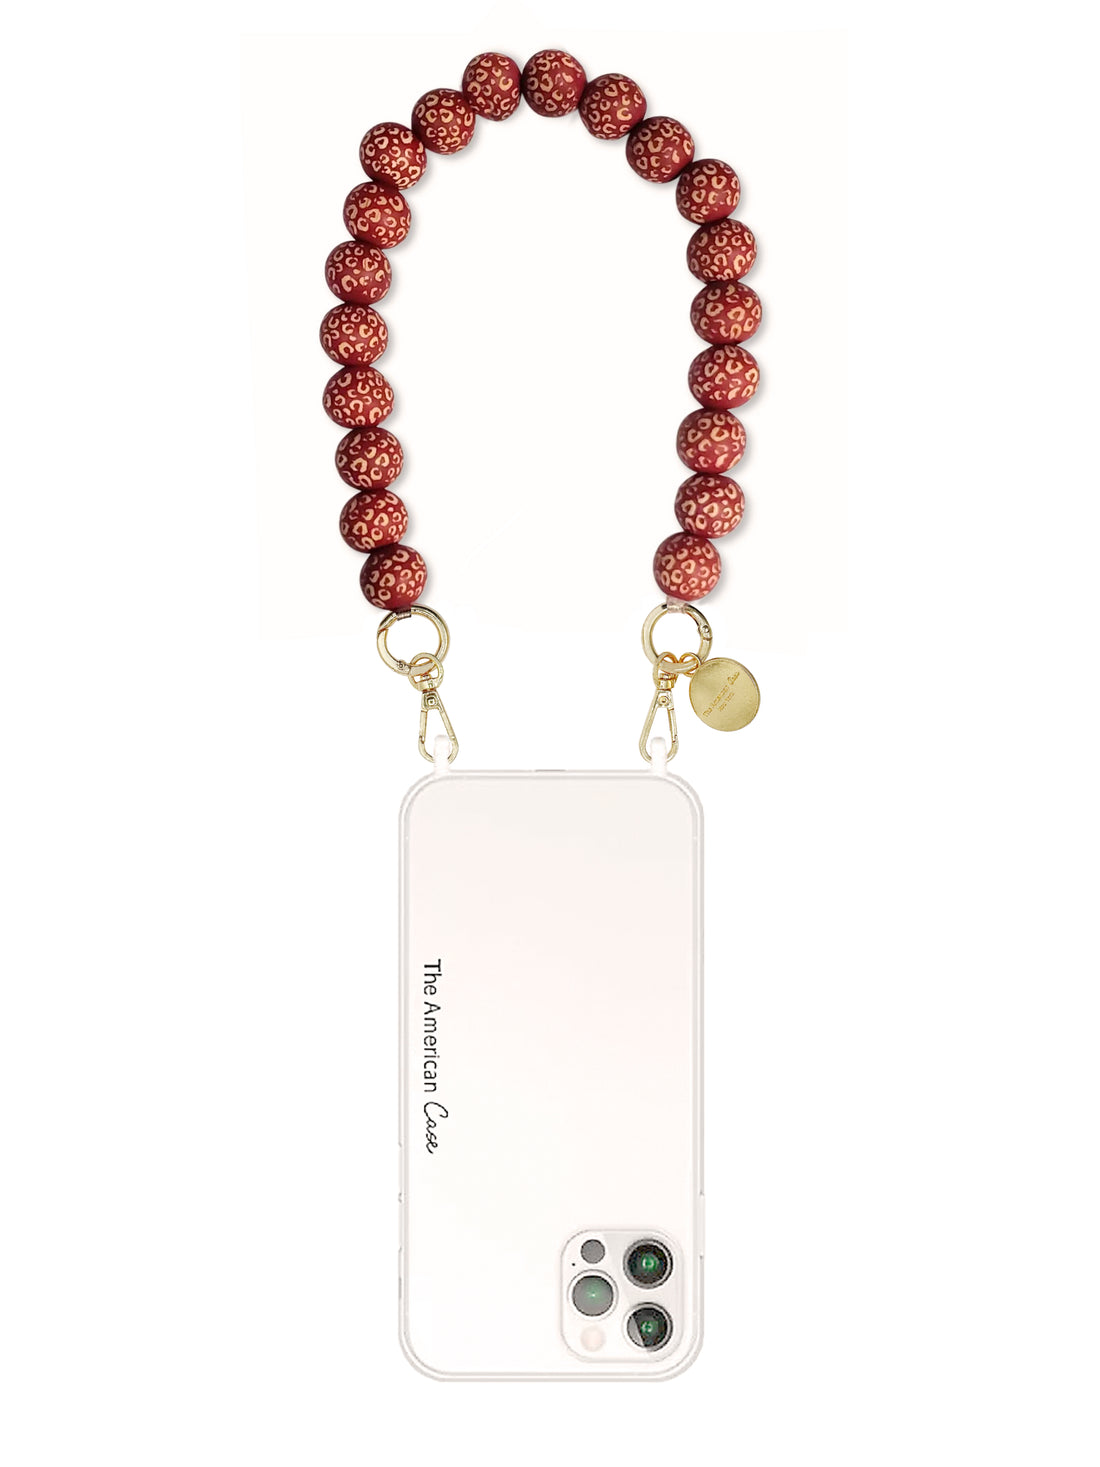 Zen -  Wooden Bead Short Phone Chain with Metal Carabiners